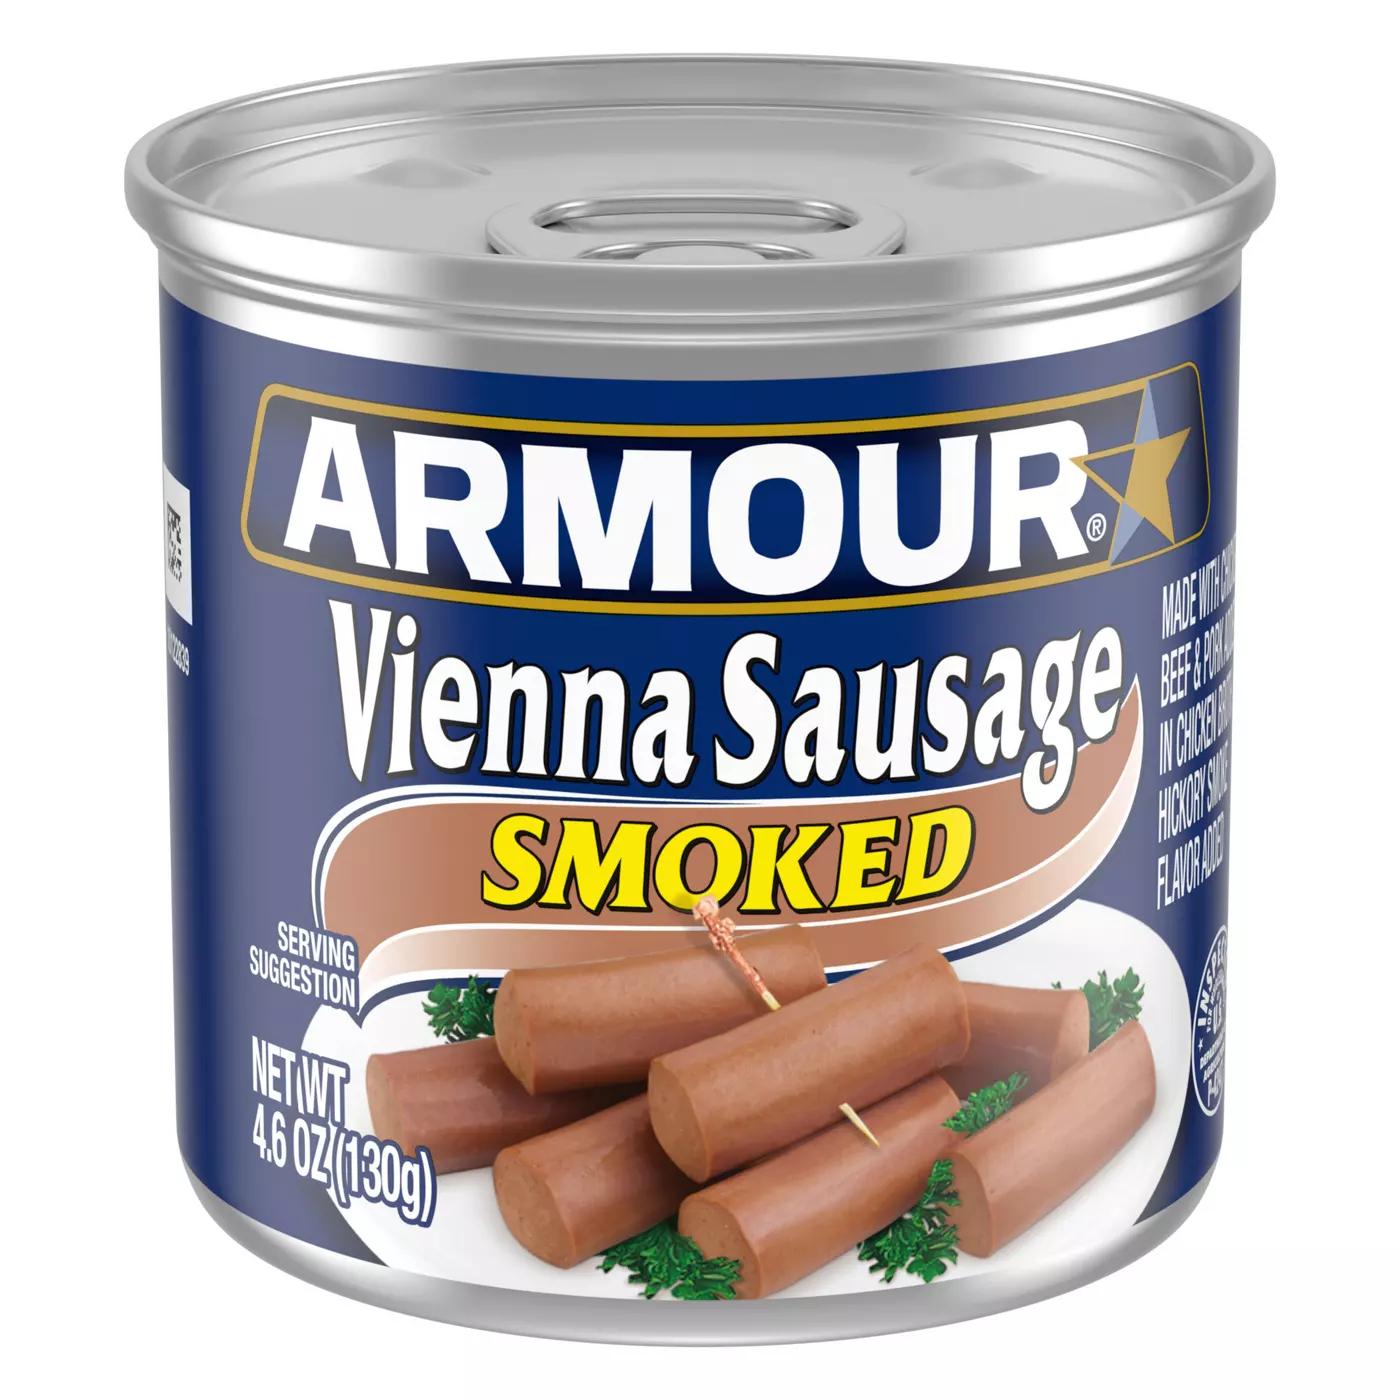 smoked vienna sausage - What is smoked Vienna sausage